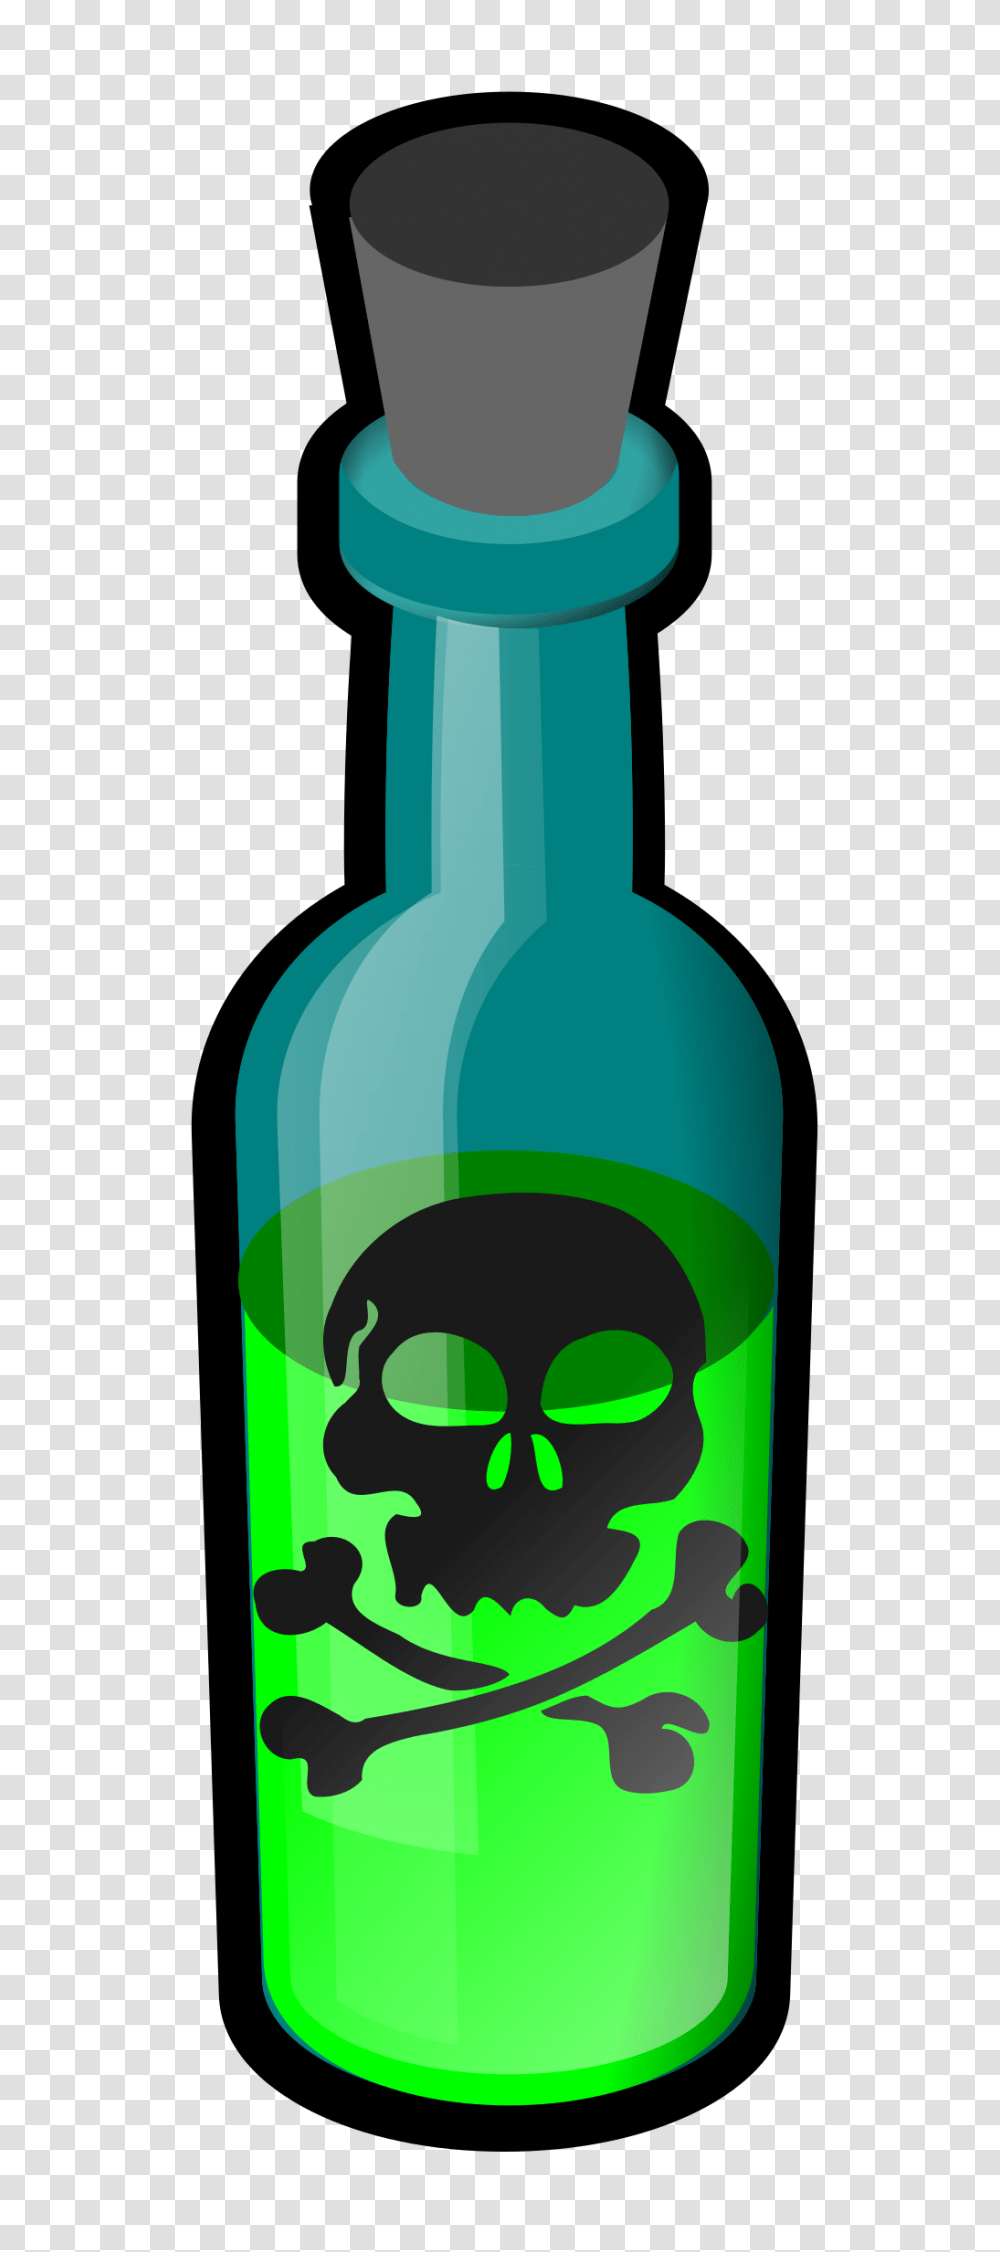 Poison Bottle Icons, Absinthe, Liquor, Alcohol, Beverage Transparent Png